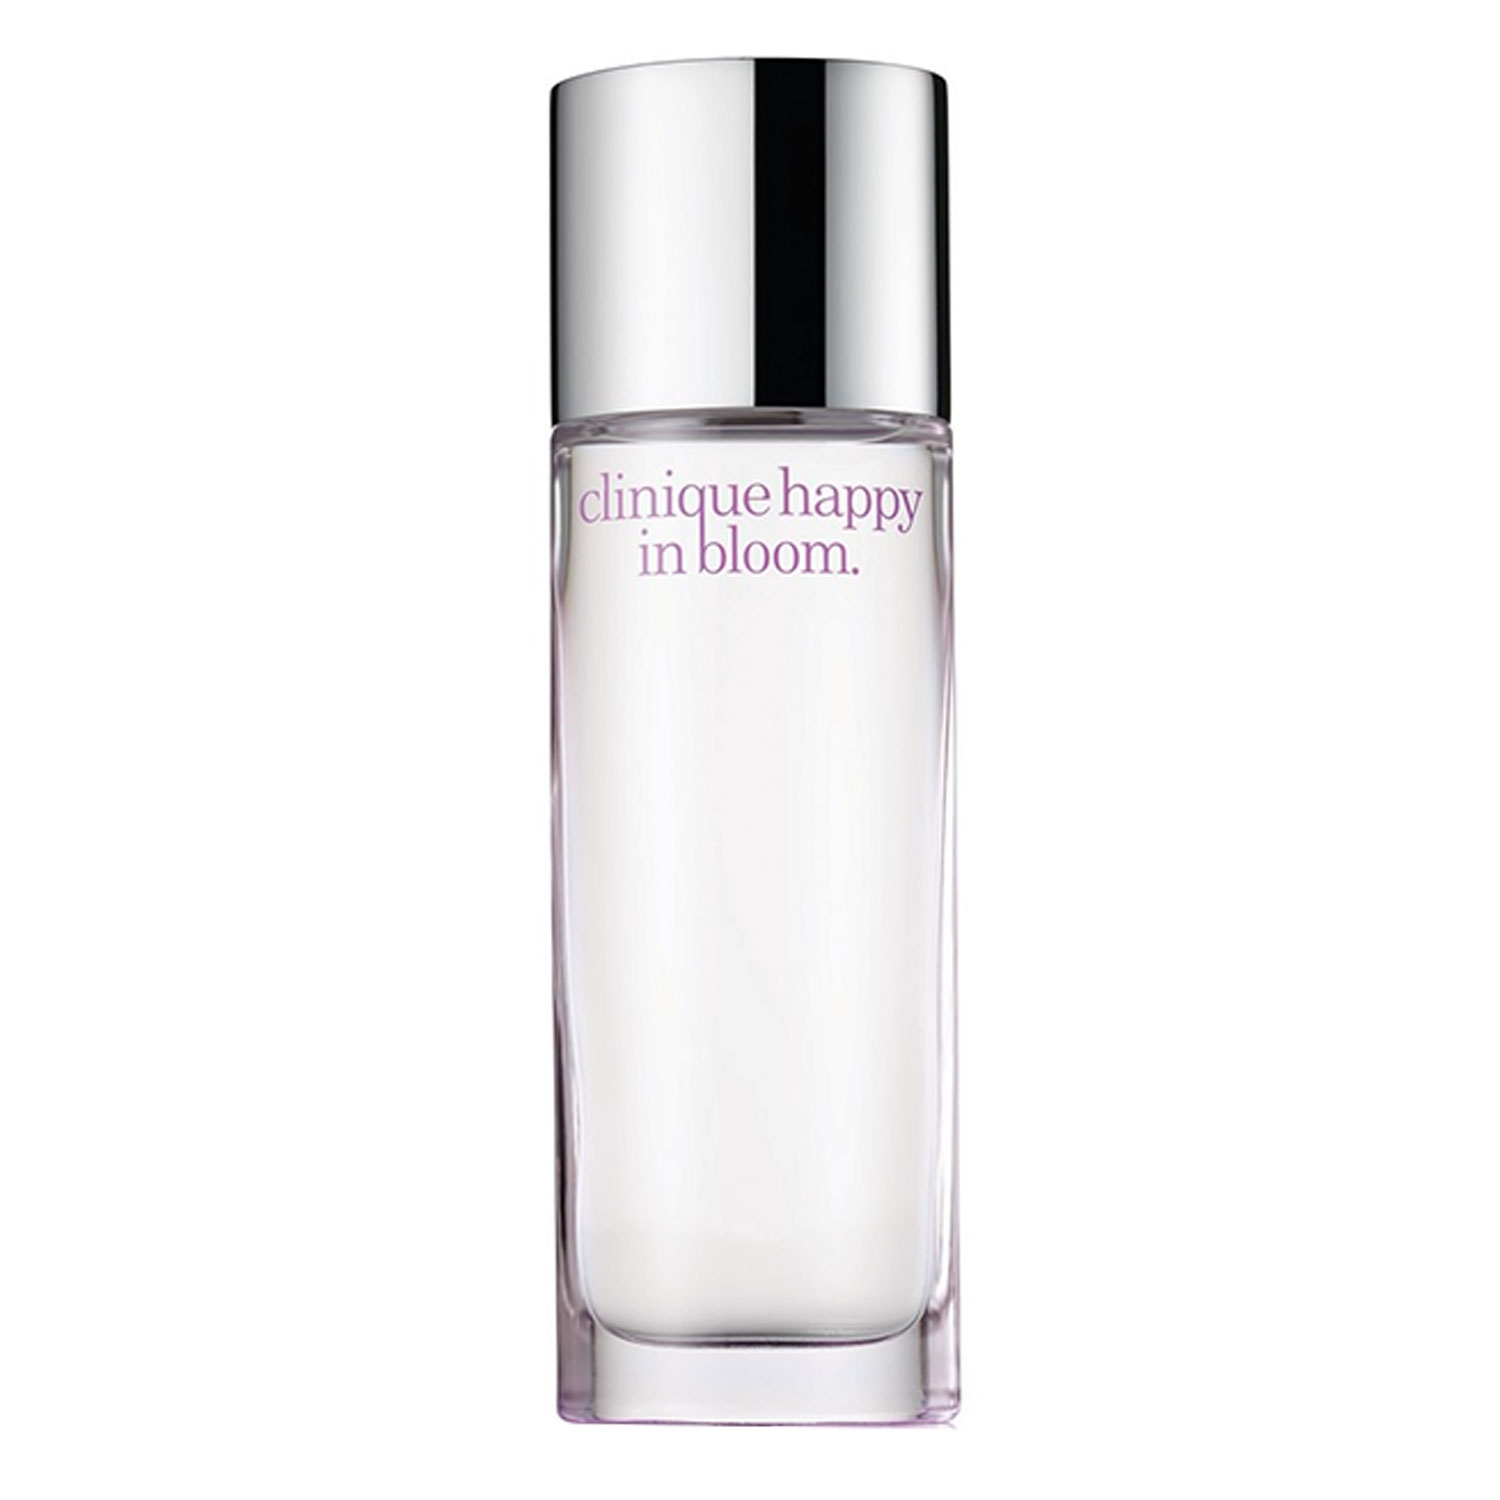 Produktbild von Clinique Happy - In Bloom Perfume Spray